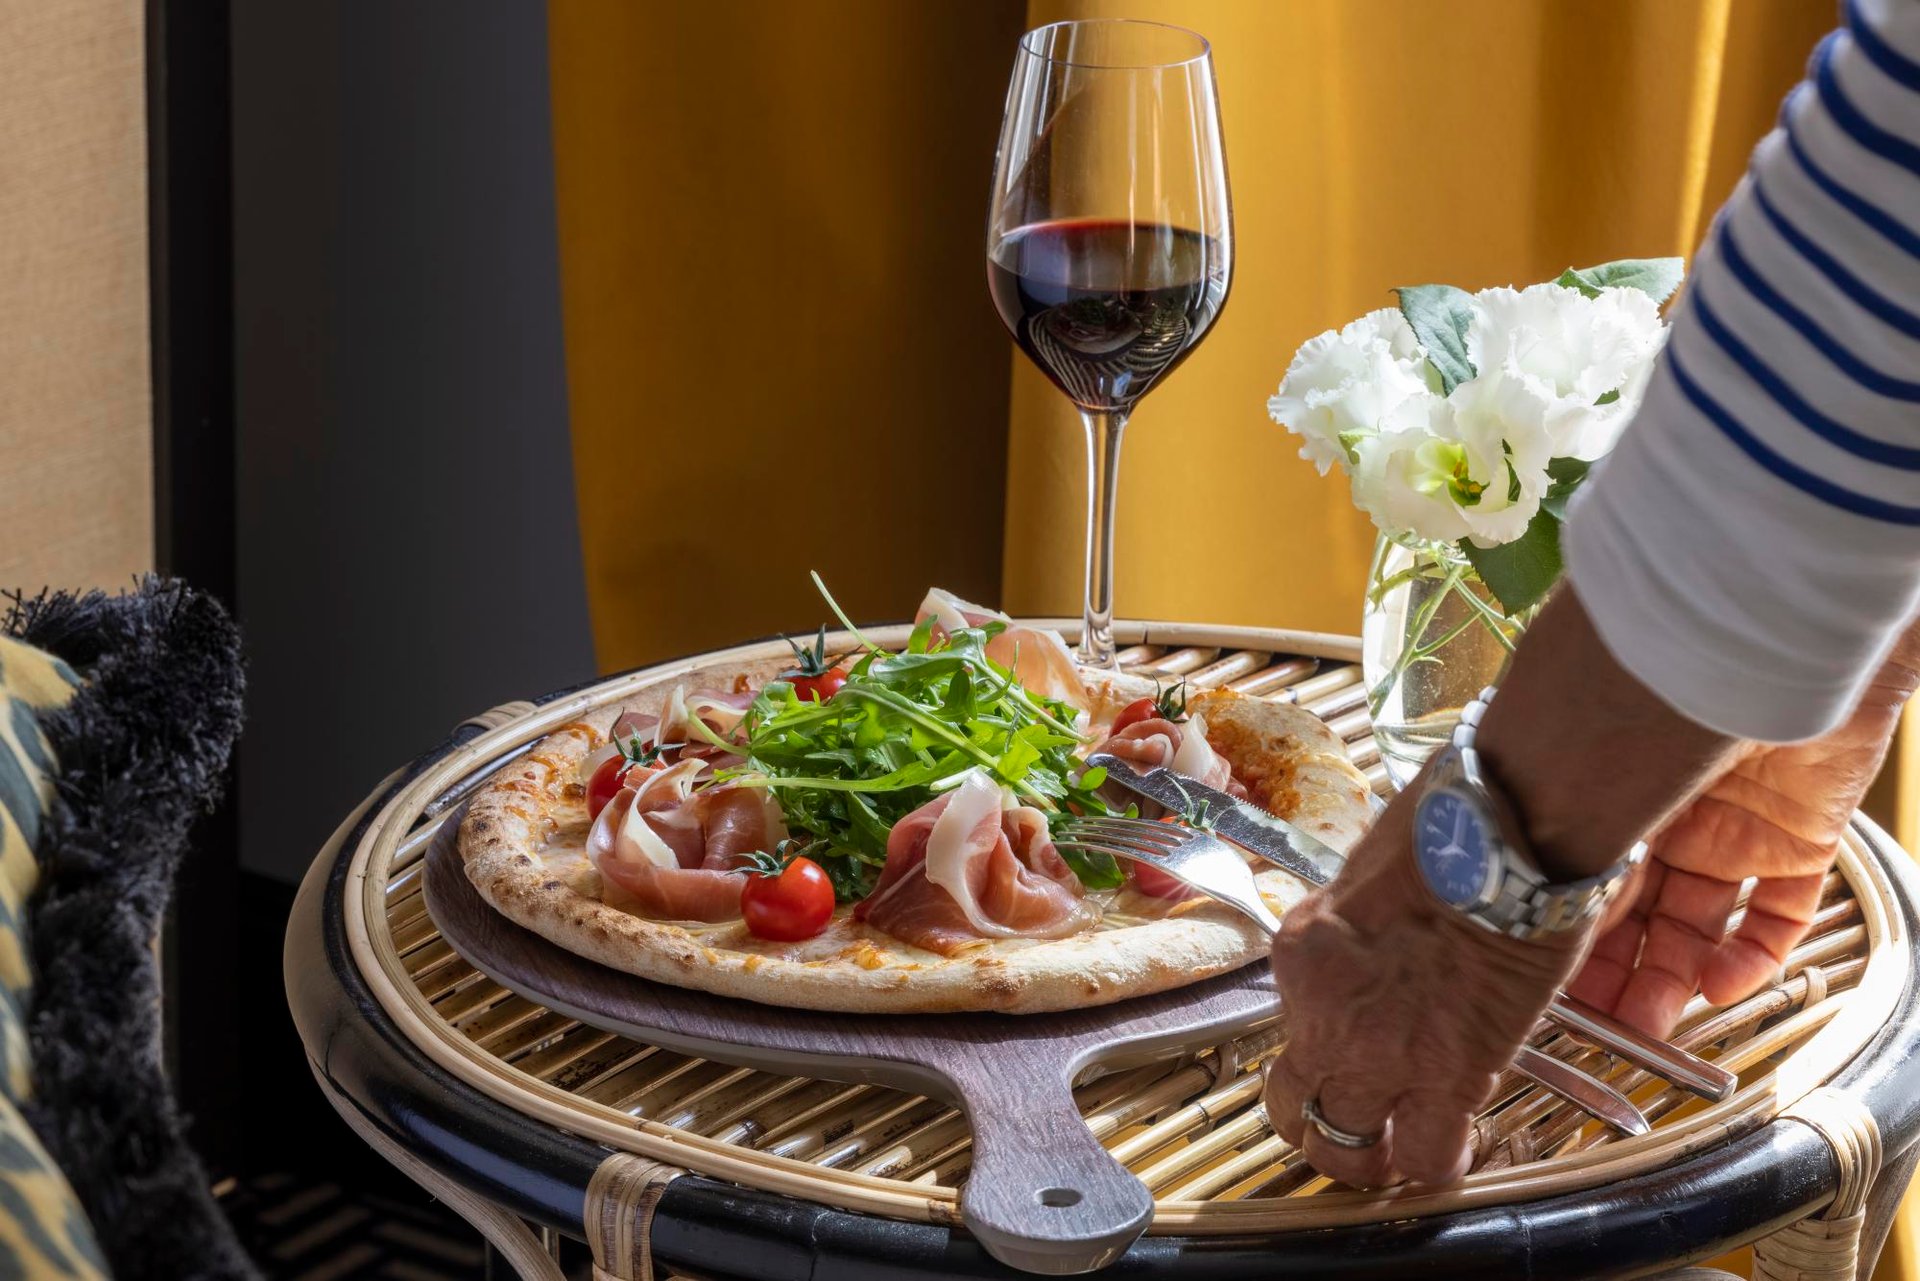 Grand Hotel Chicago room service pizza wine